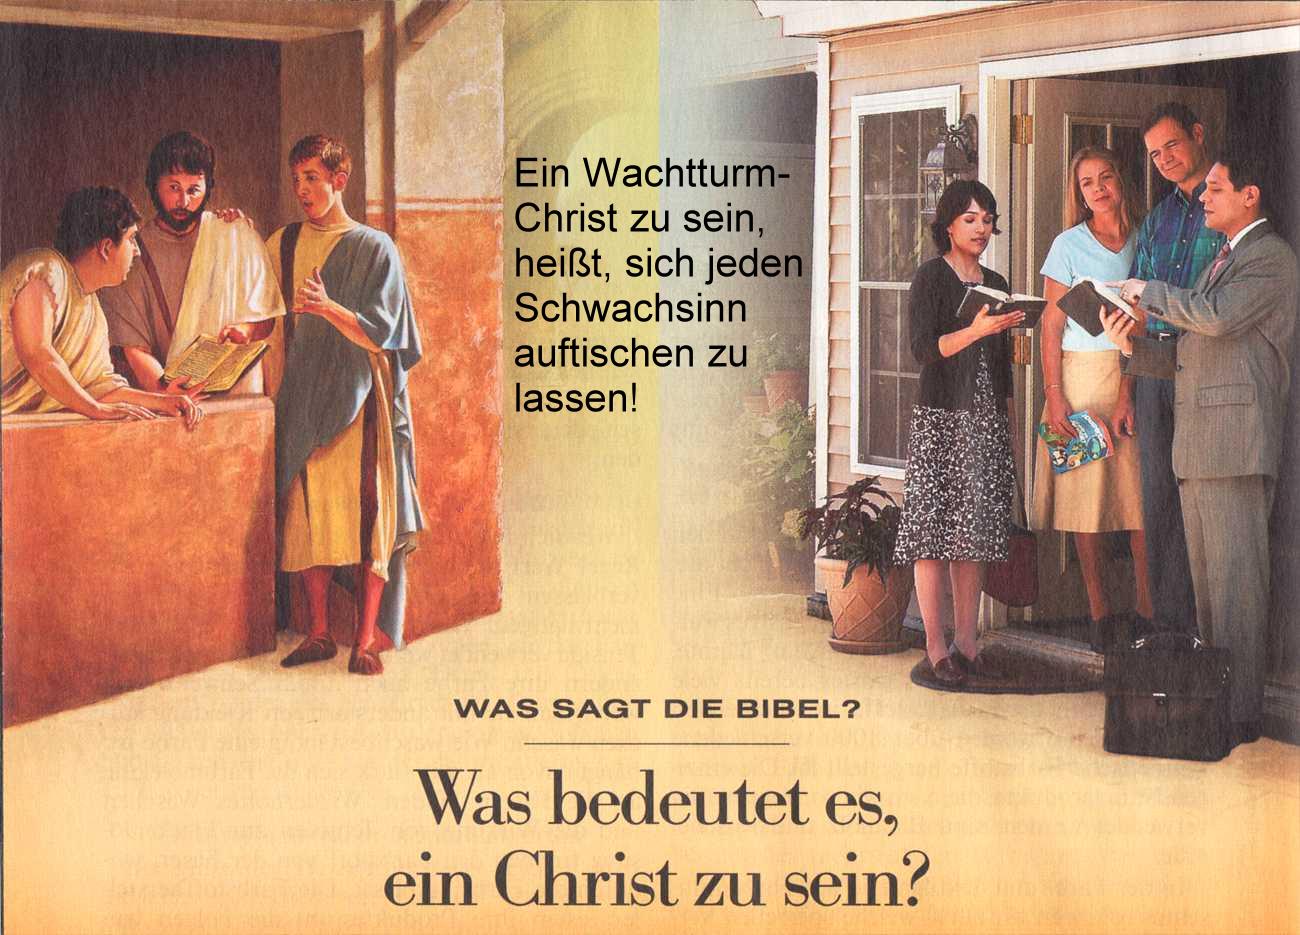 Millionen Zeugen Jehovas zutode betrogen